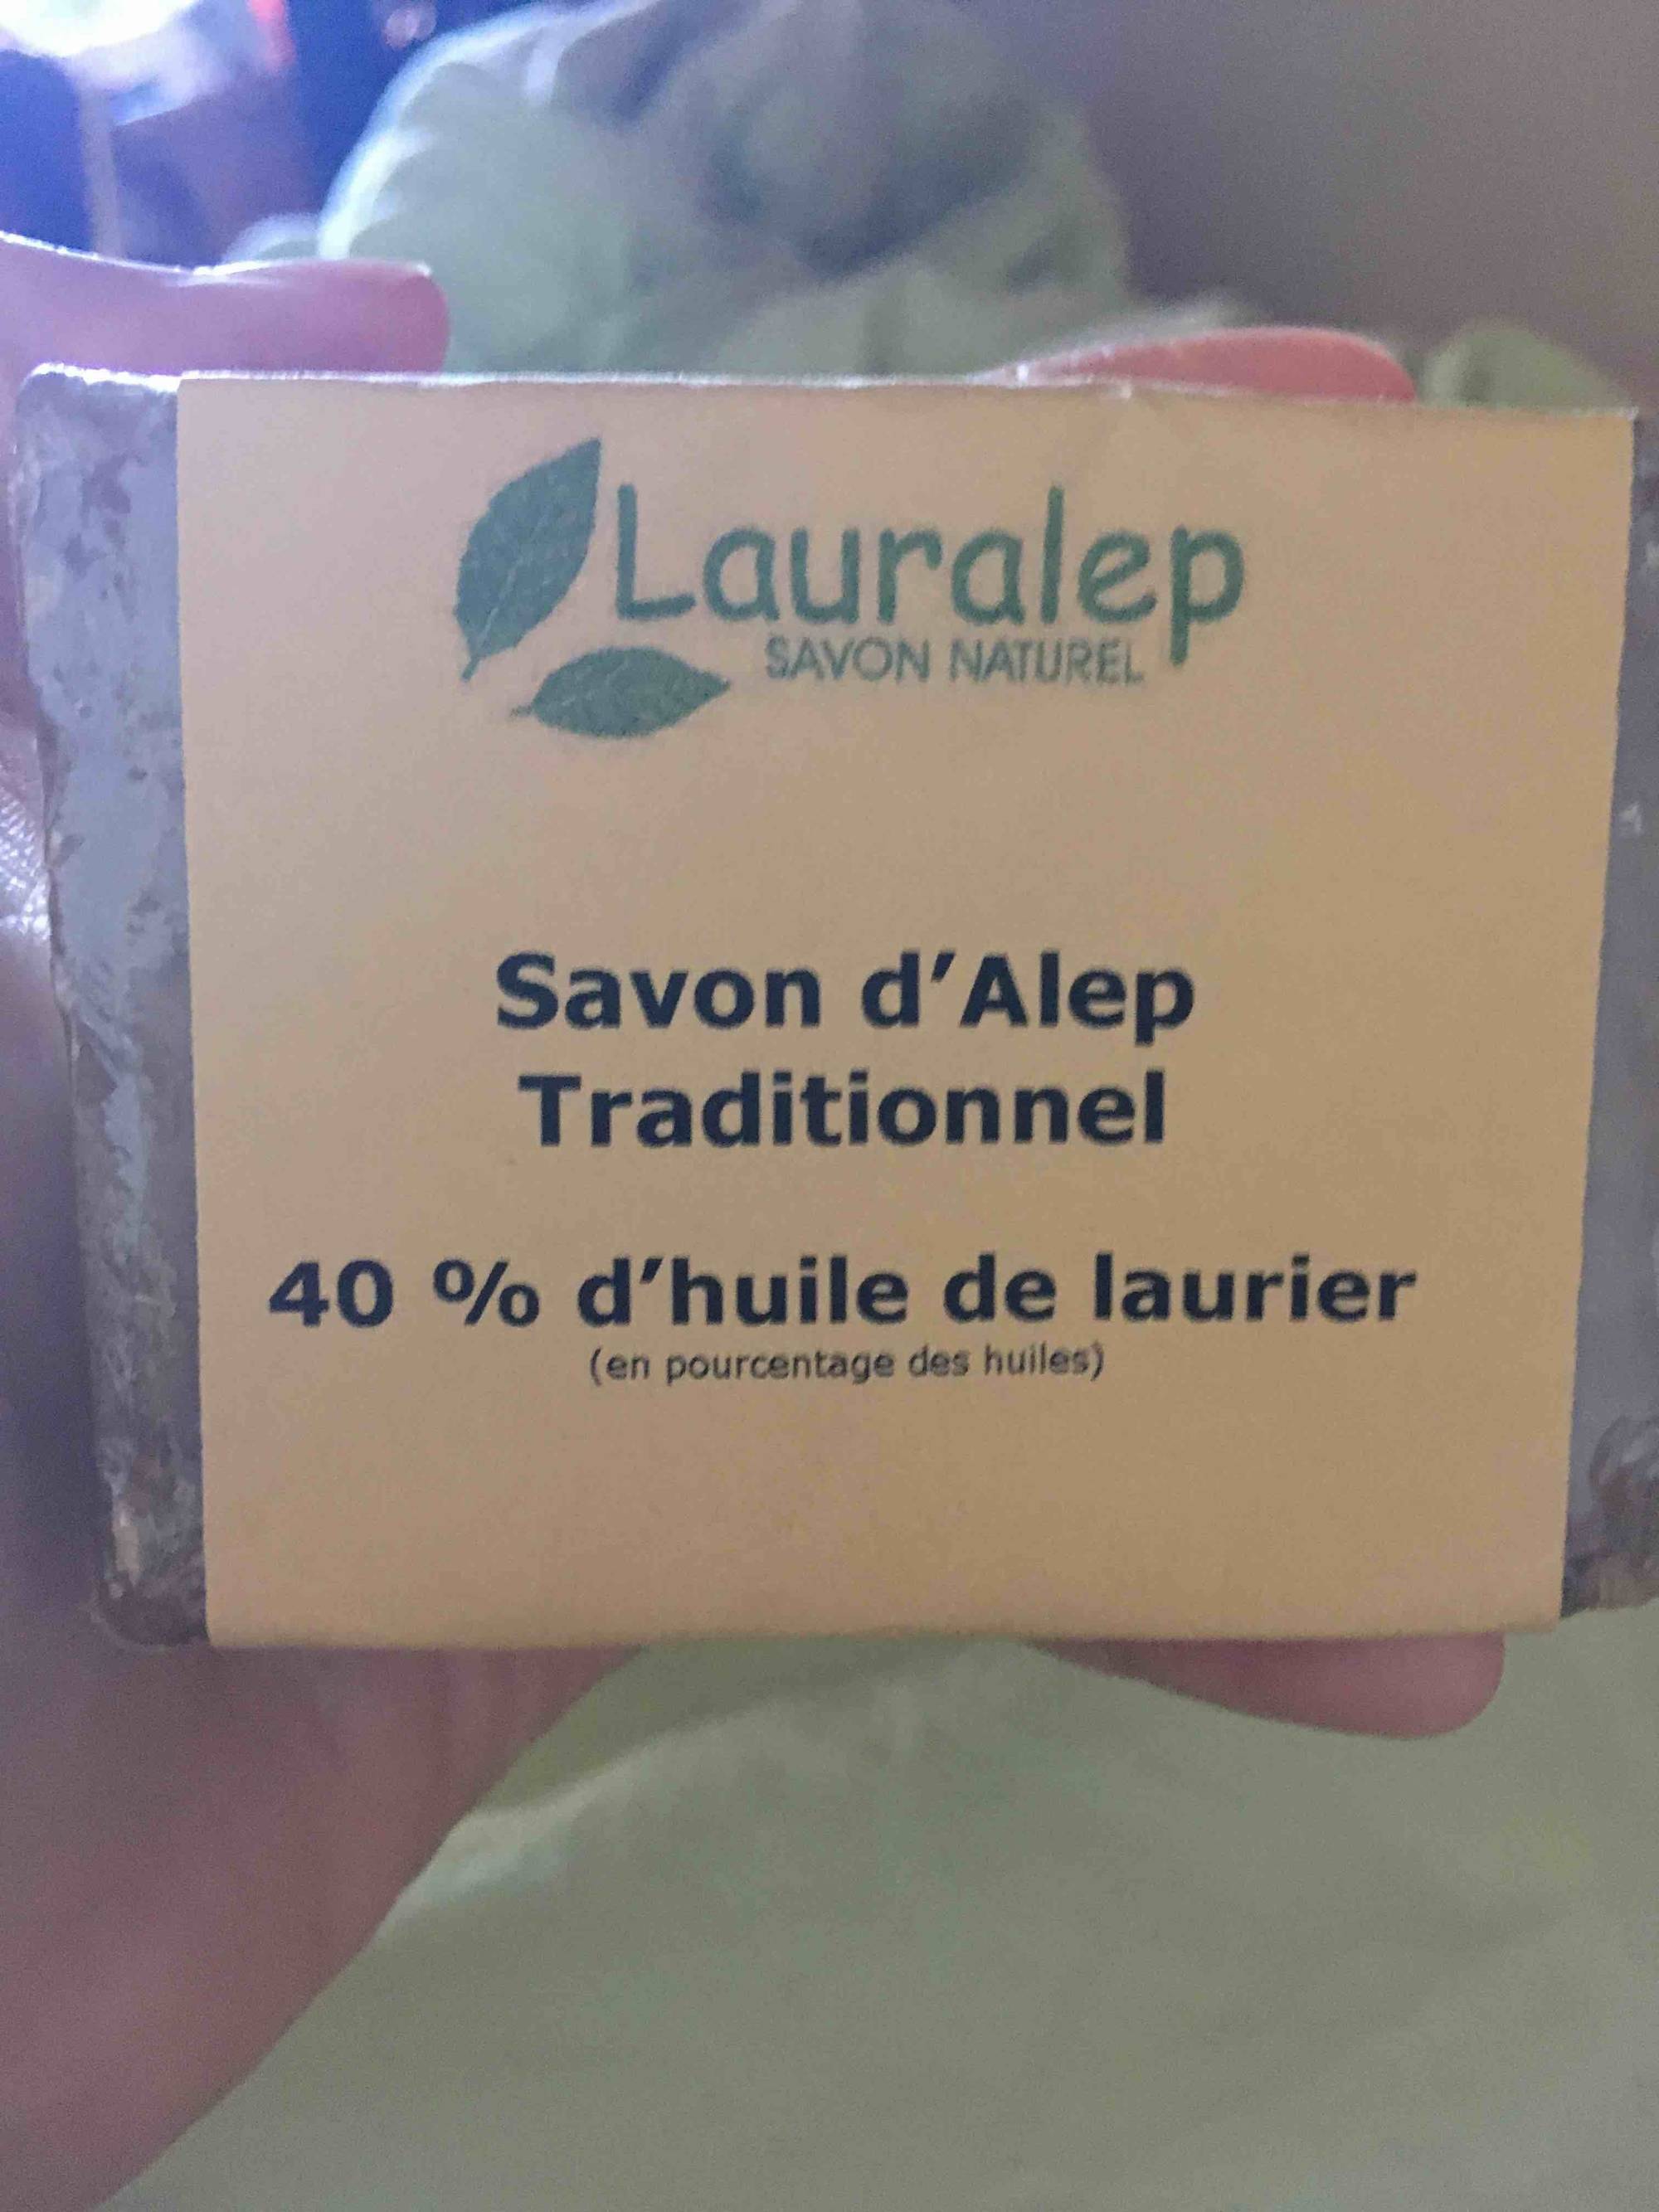 LAURALEP - Savon d'Alep traditionnel 40% d'huile de laurier